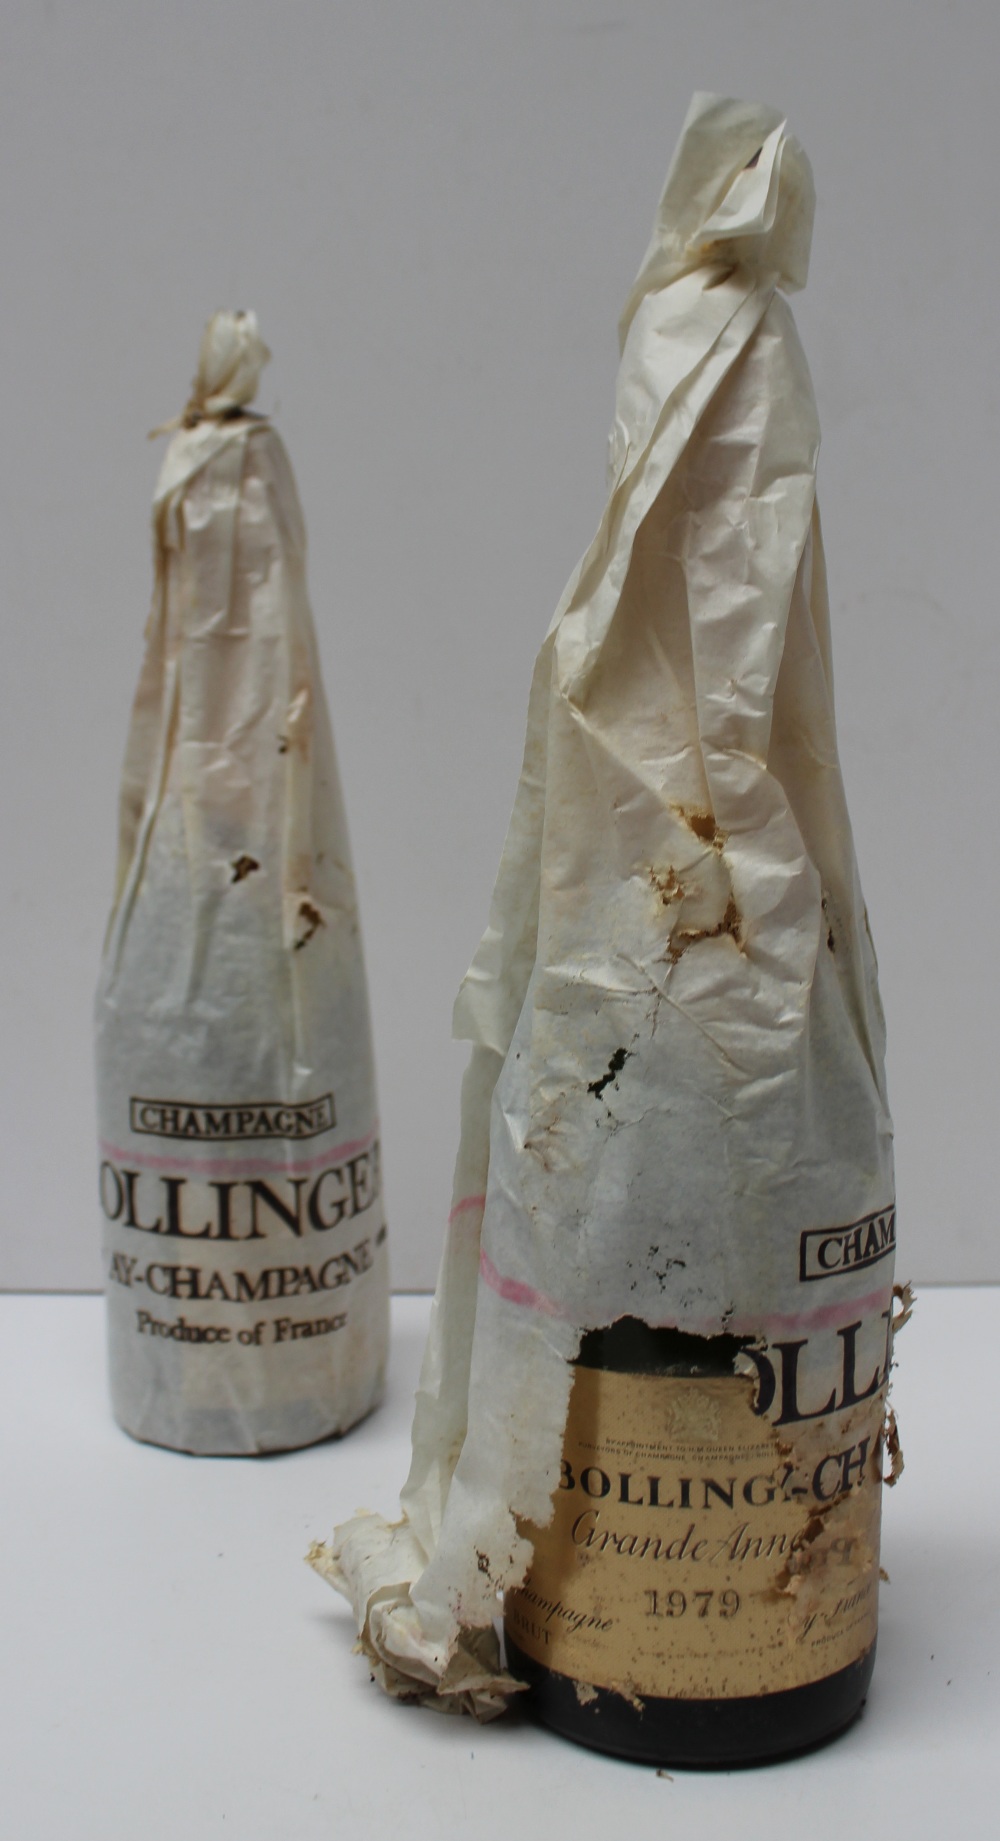 Two bottles of Bollinger champagne Grande Annee 1979